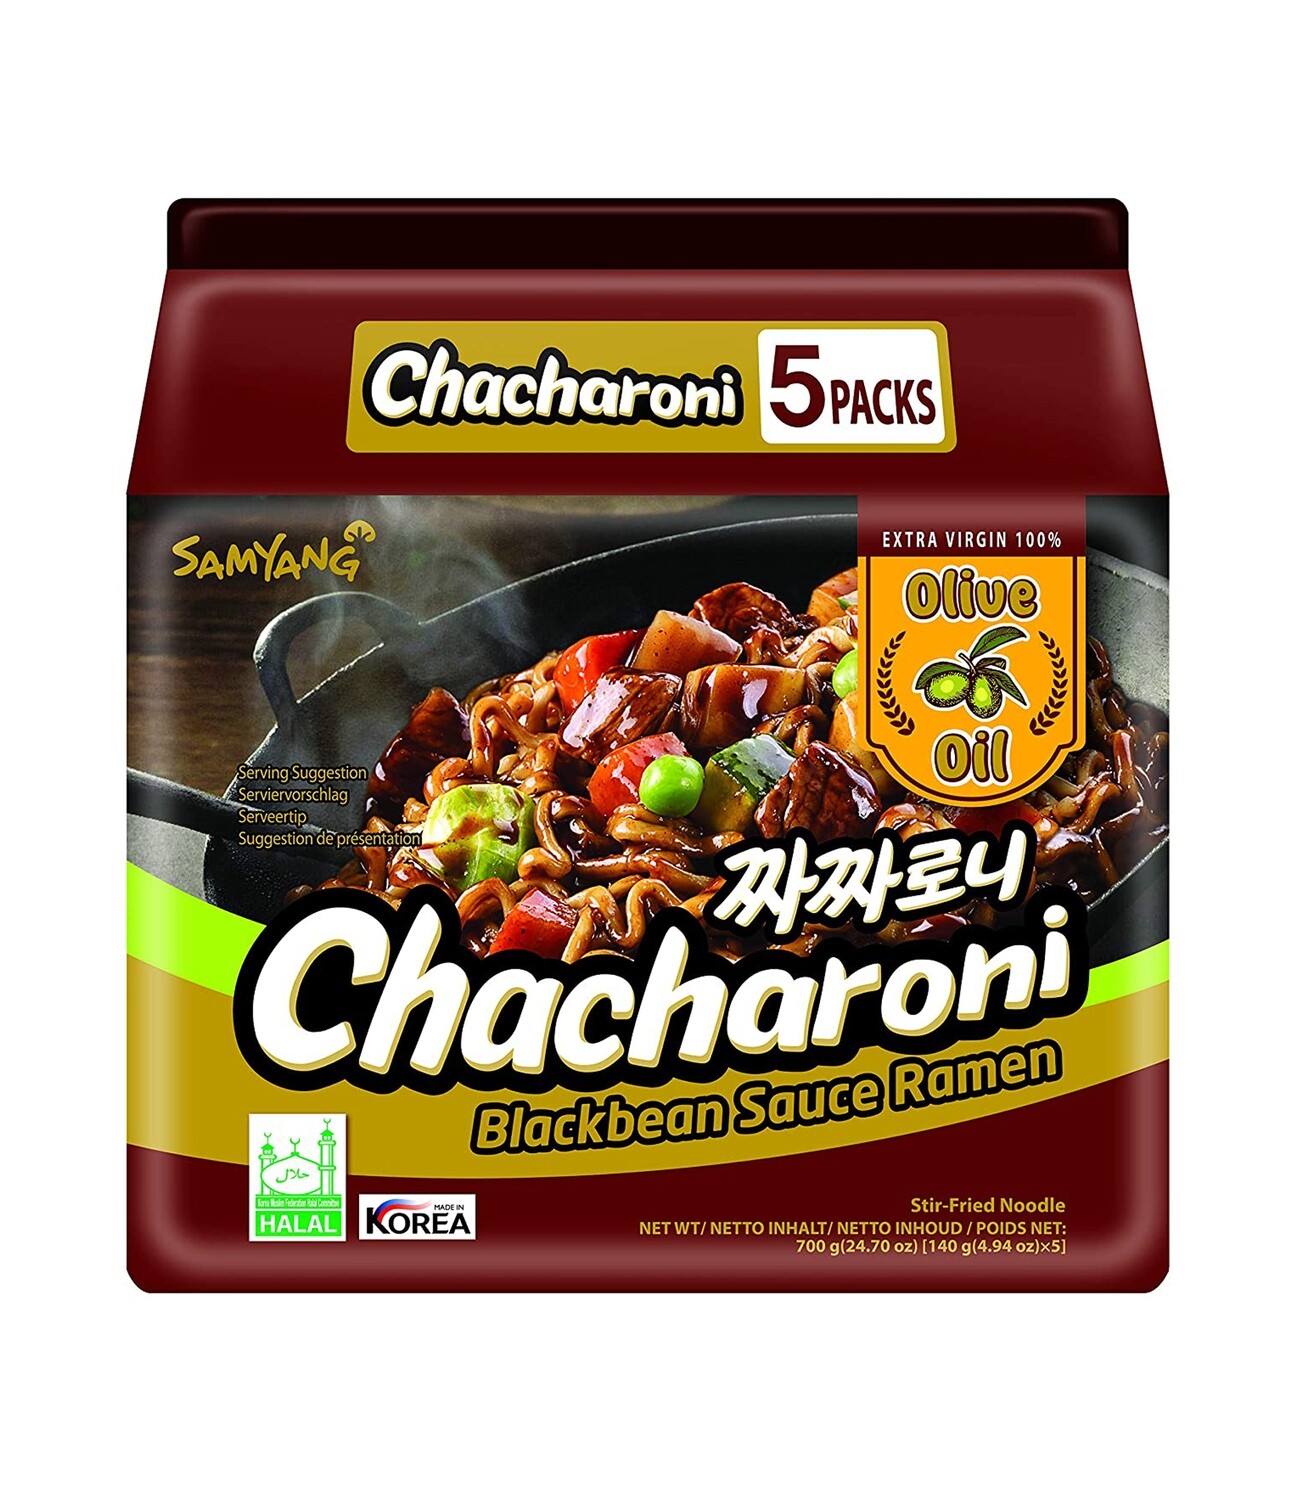 Samyang Chacharoni